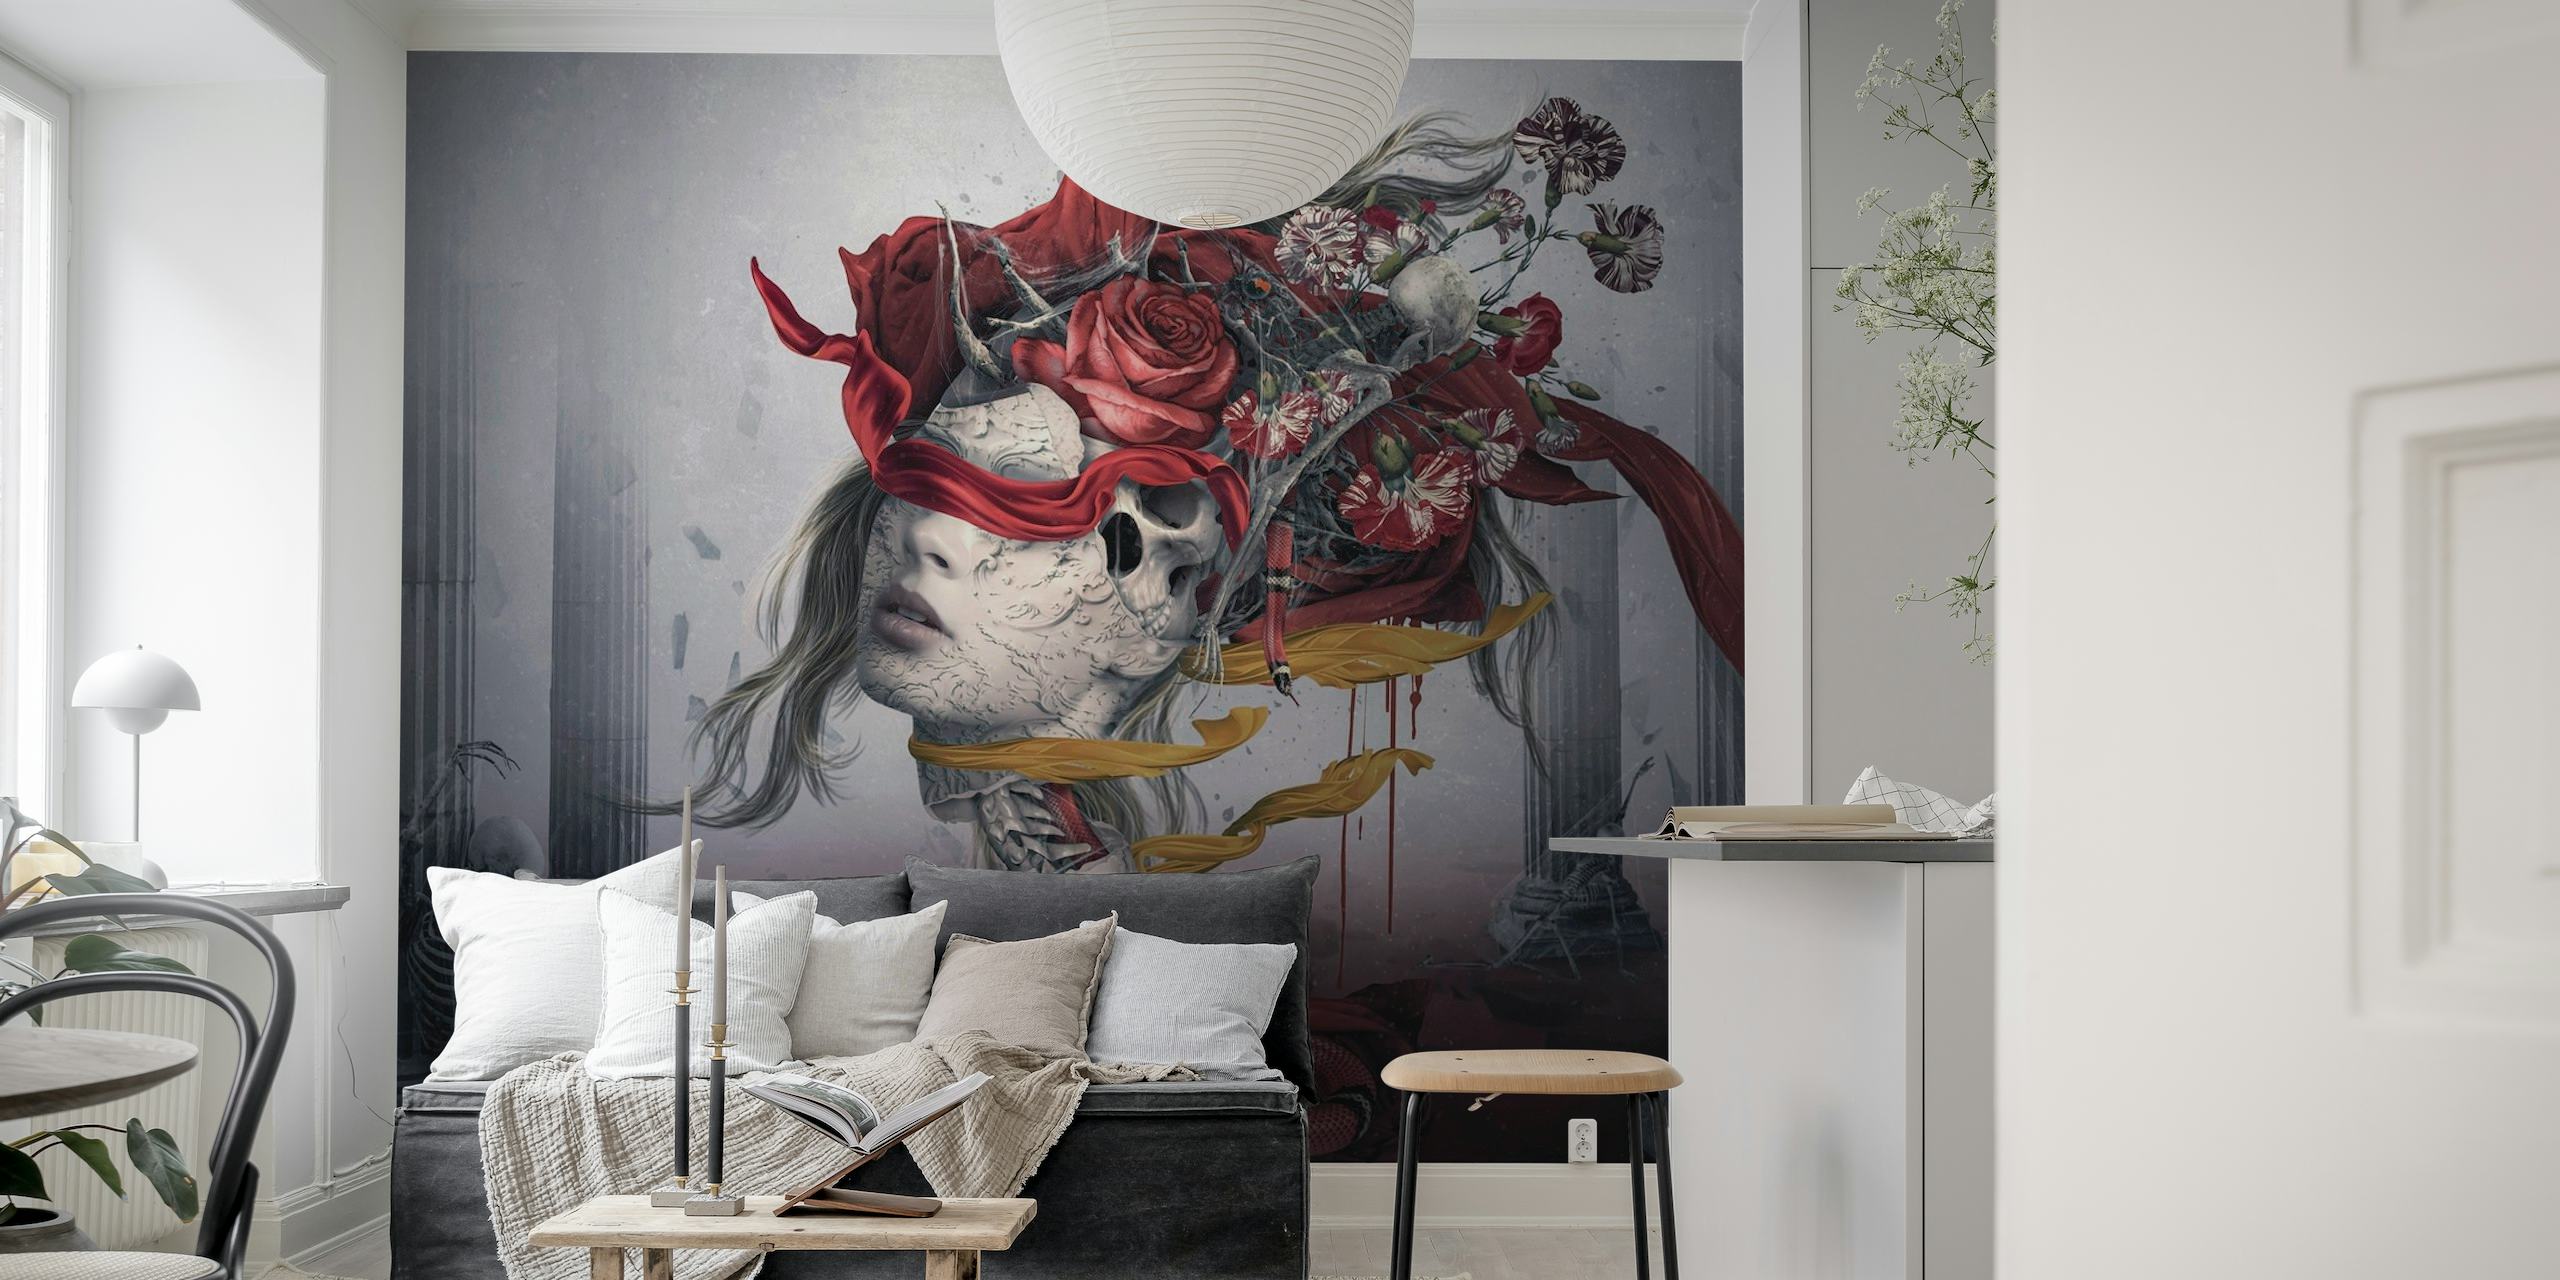 Représentation murale surréaliste d'un personnage avec des roses rouges et des détails enfumés sur un fond sourd